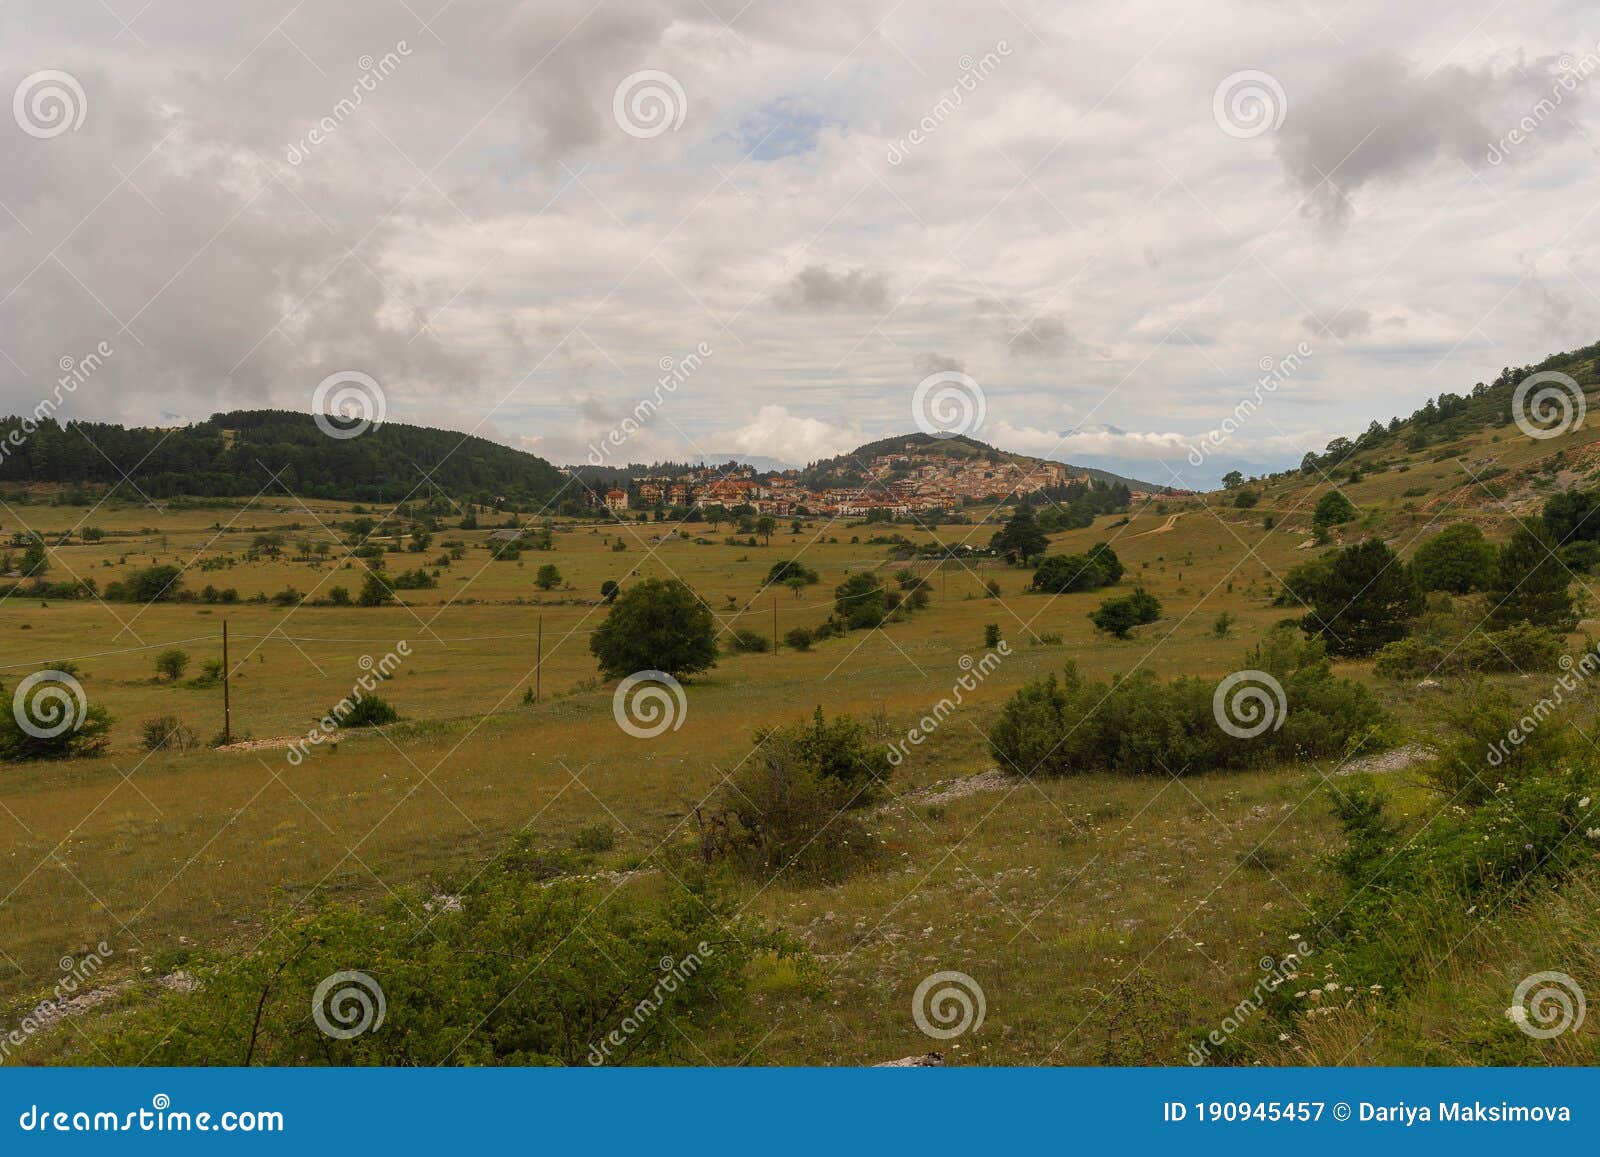 scenic mountain view to campo di giove in abruzzo, italy